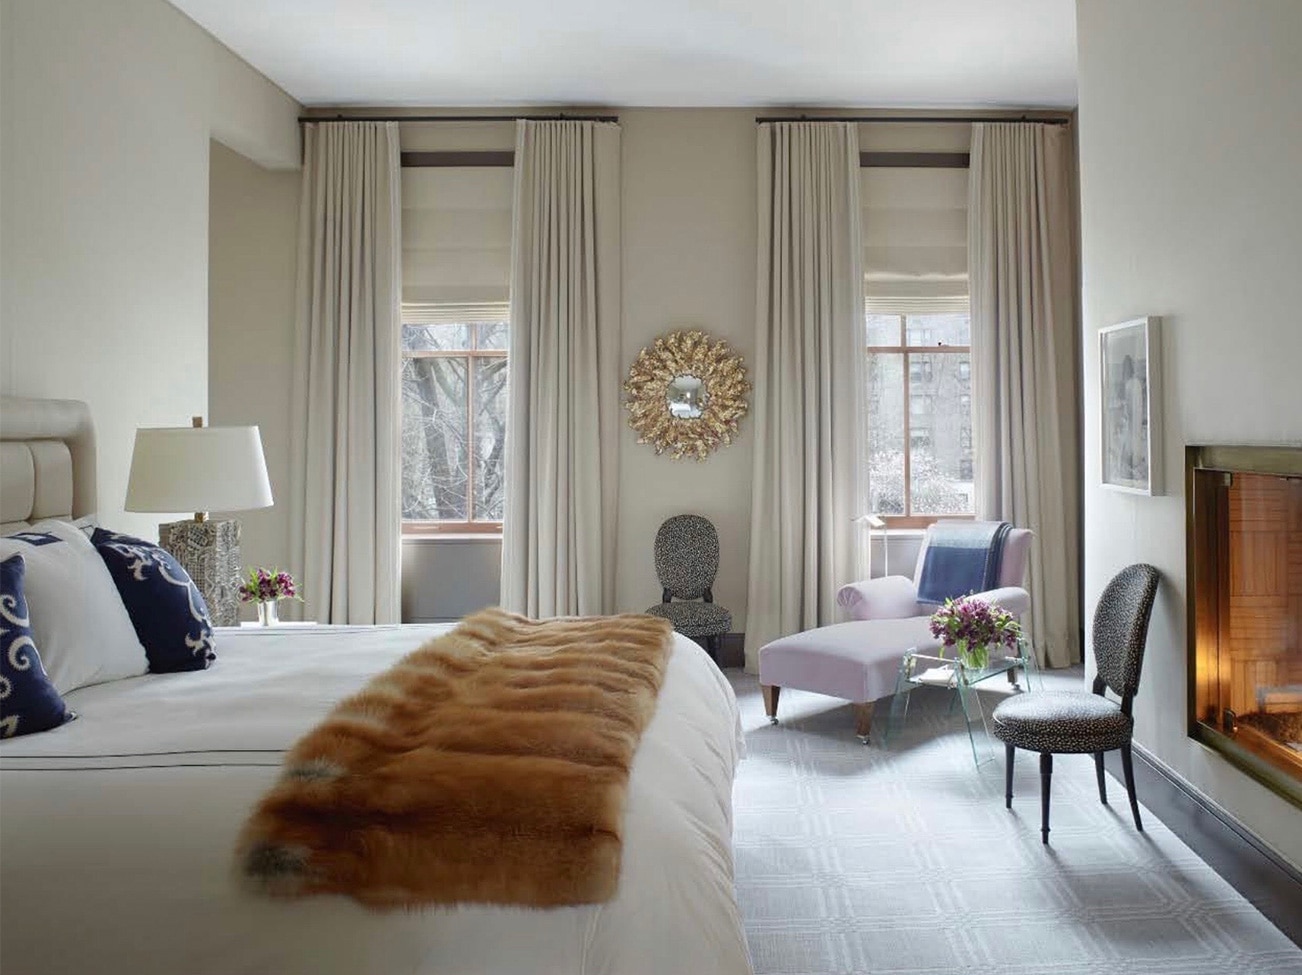 Élégante chambre à coucher blanche avec foyer allumé, lit avec jeté en fourrure, coussins décoratifs bleus et chaise longue.